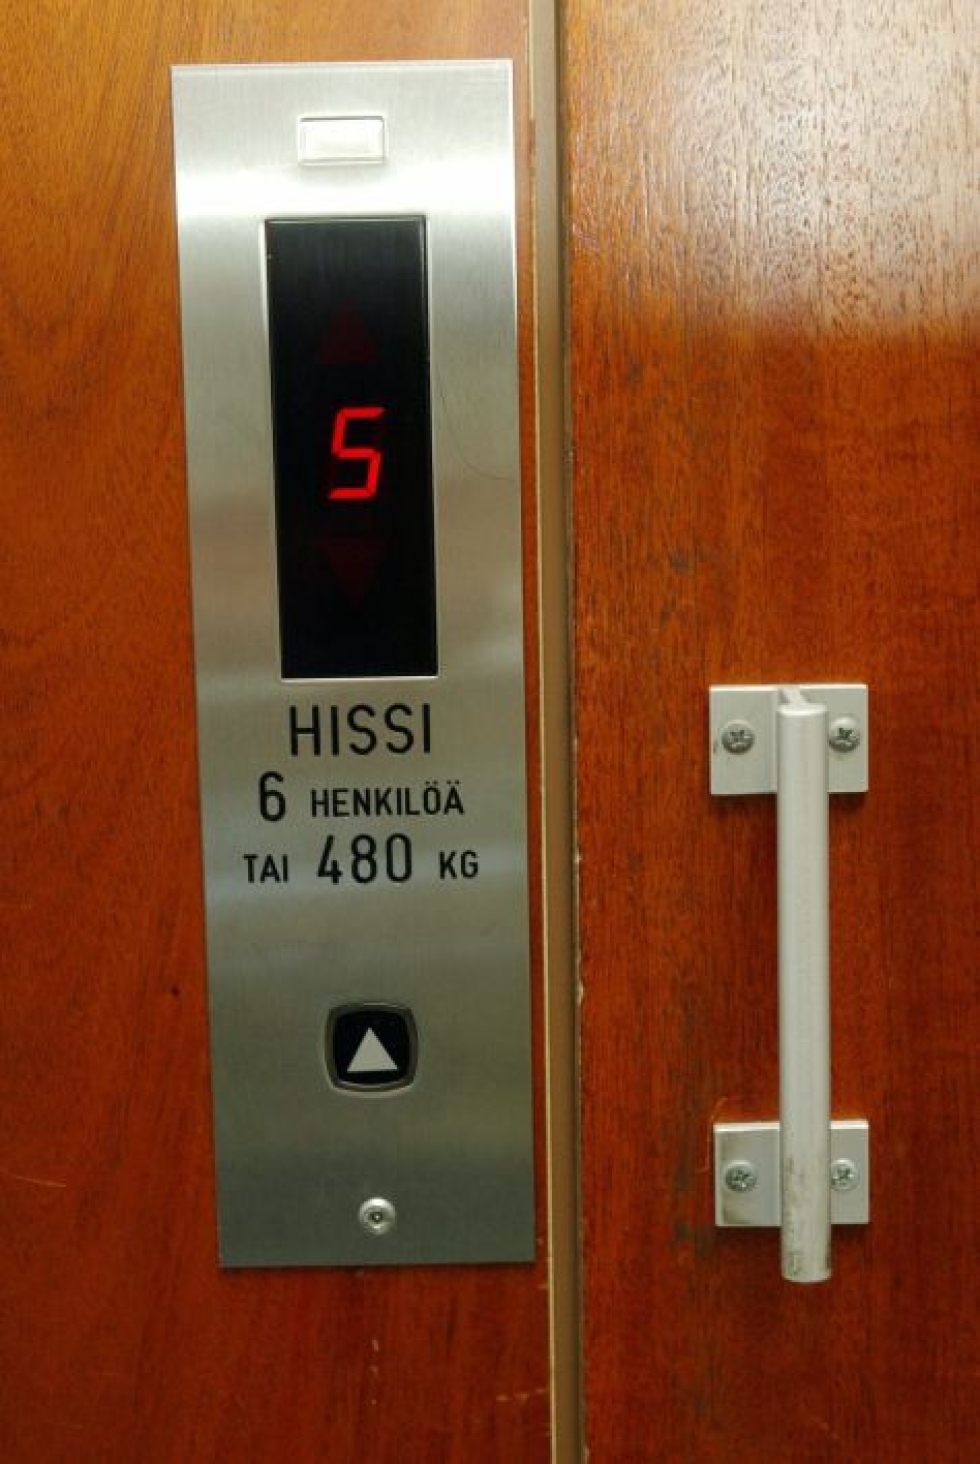 Kone Hissit keskittyy hissien, liukuportaiden ja automaattiovien kunnossapitoon ja peruskorjaukseen. LEHTIKUVA / Sari Gustafsson